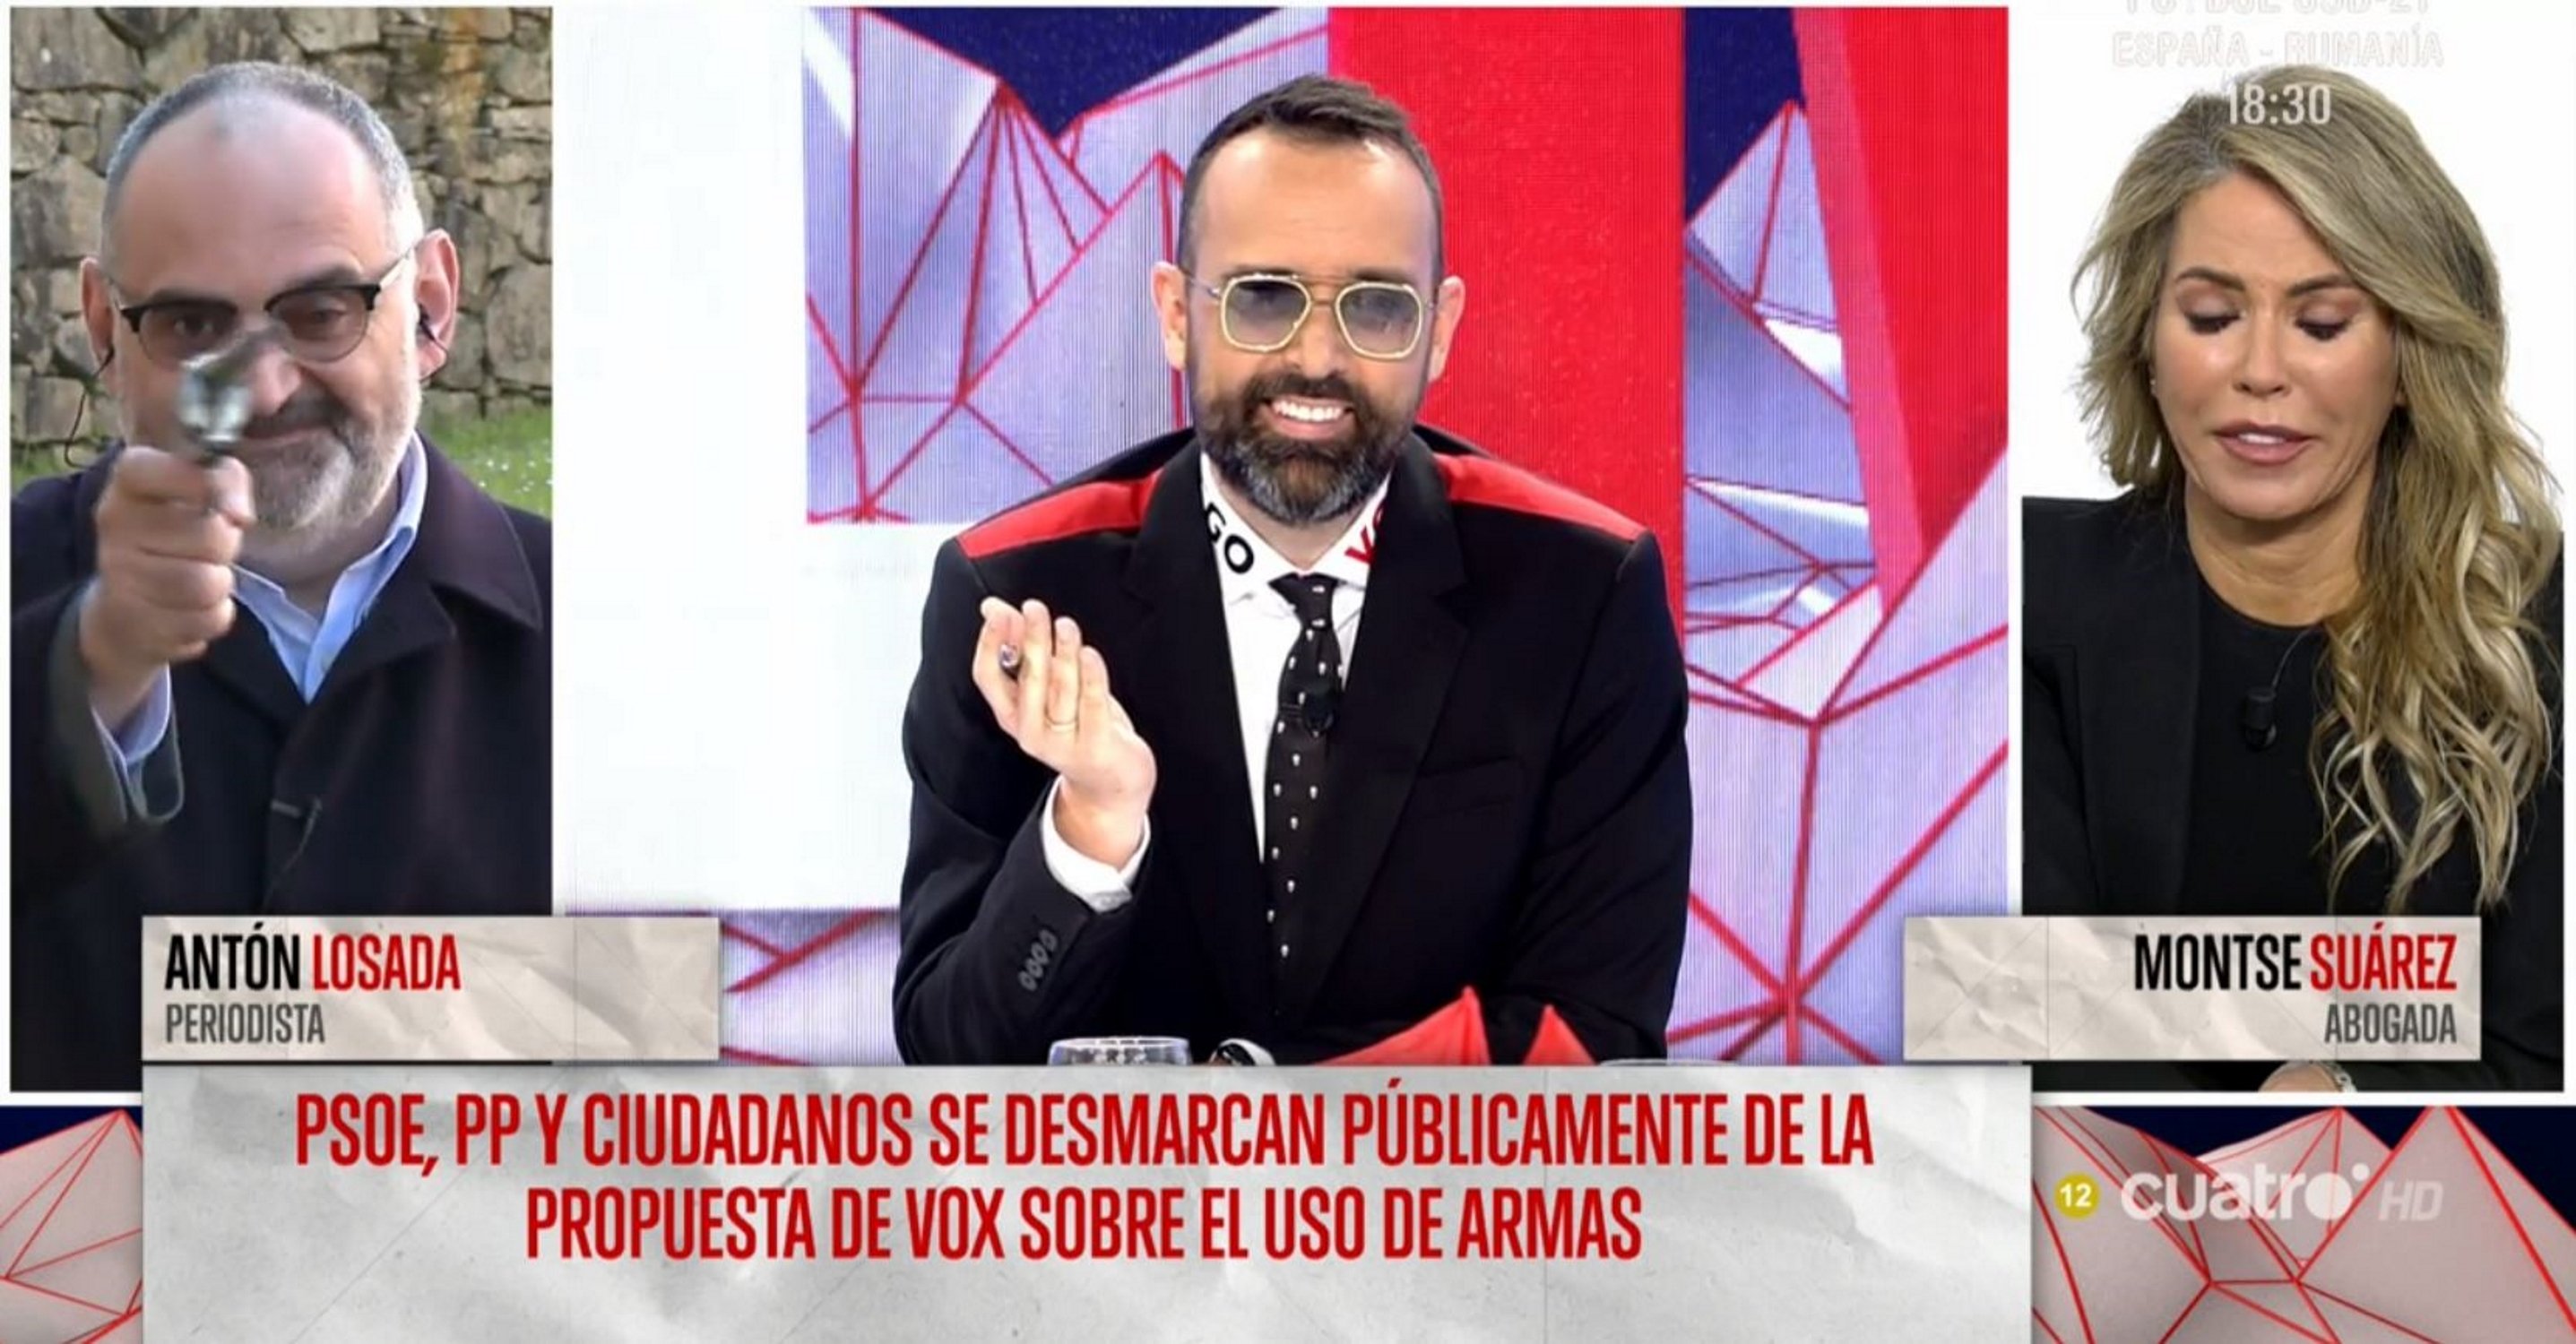 Antón Losada treu "un arma" per contestar la proposta de Vox: "Caralladas"